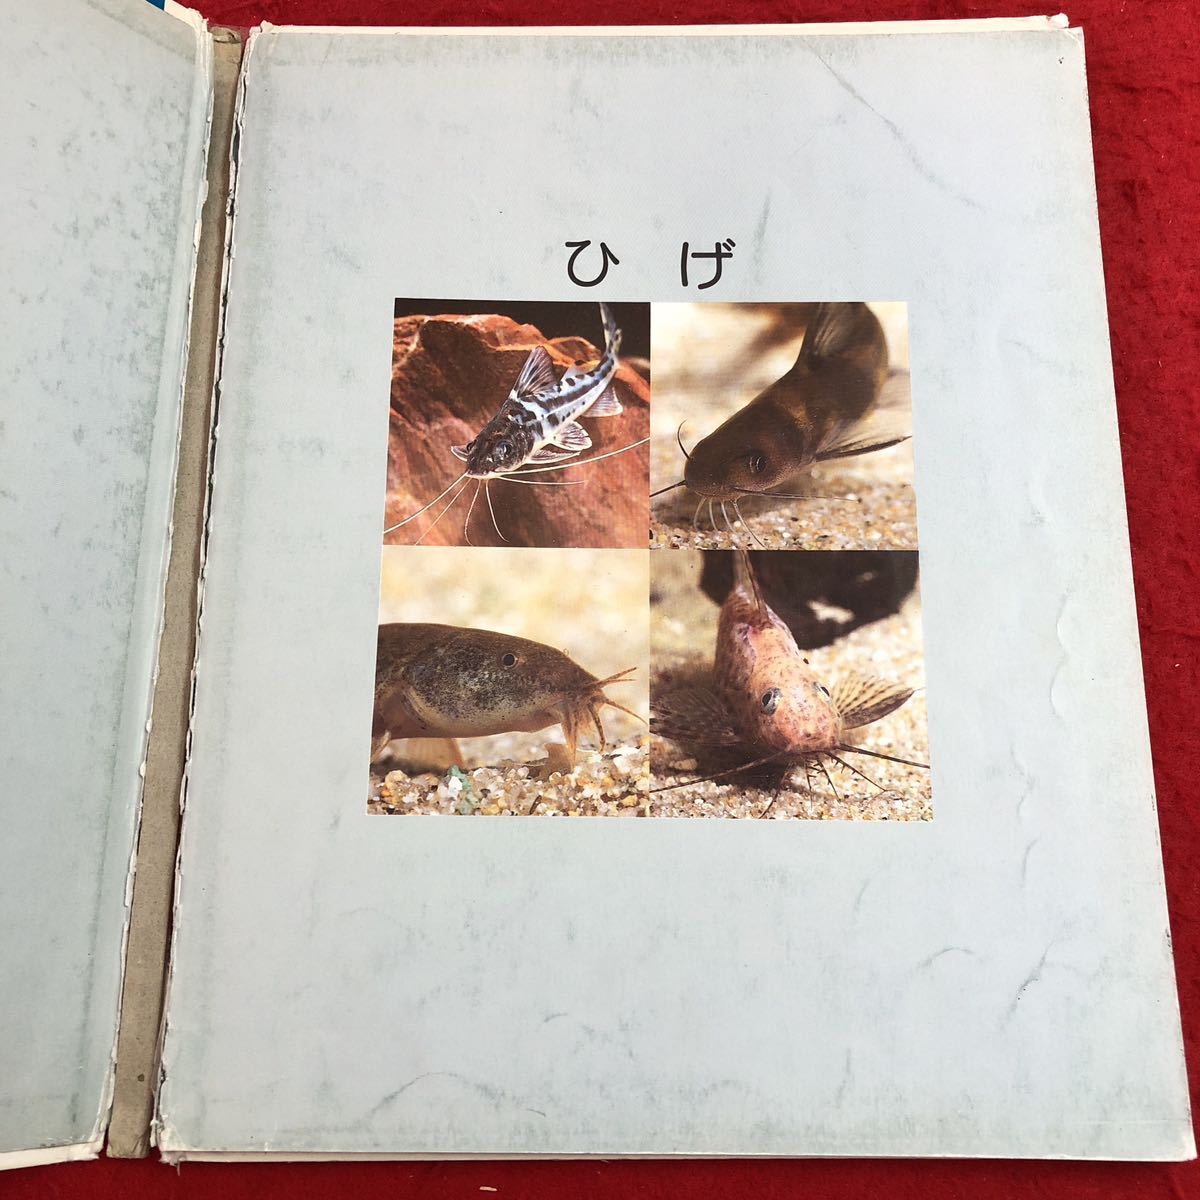 S6c-317..... gold da- книжка 1990 год 6 месяц 1 день выпуск f этикетка павильон для детей книга с картинками фотография учеба . сырой . кошка dojounamaz летящий uo